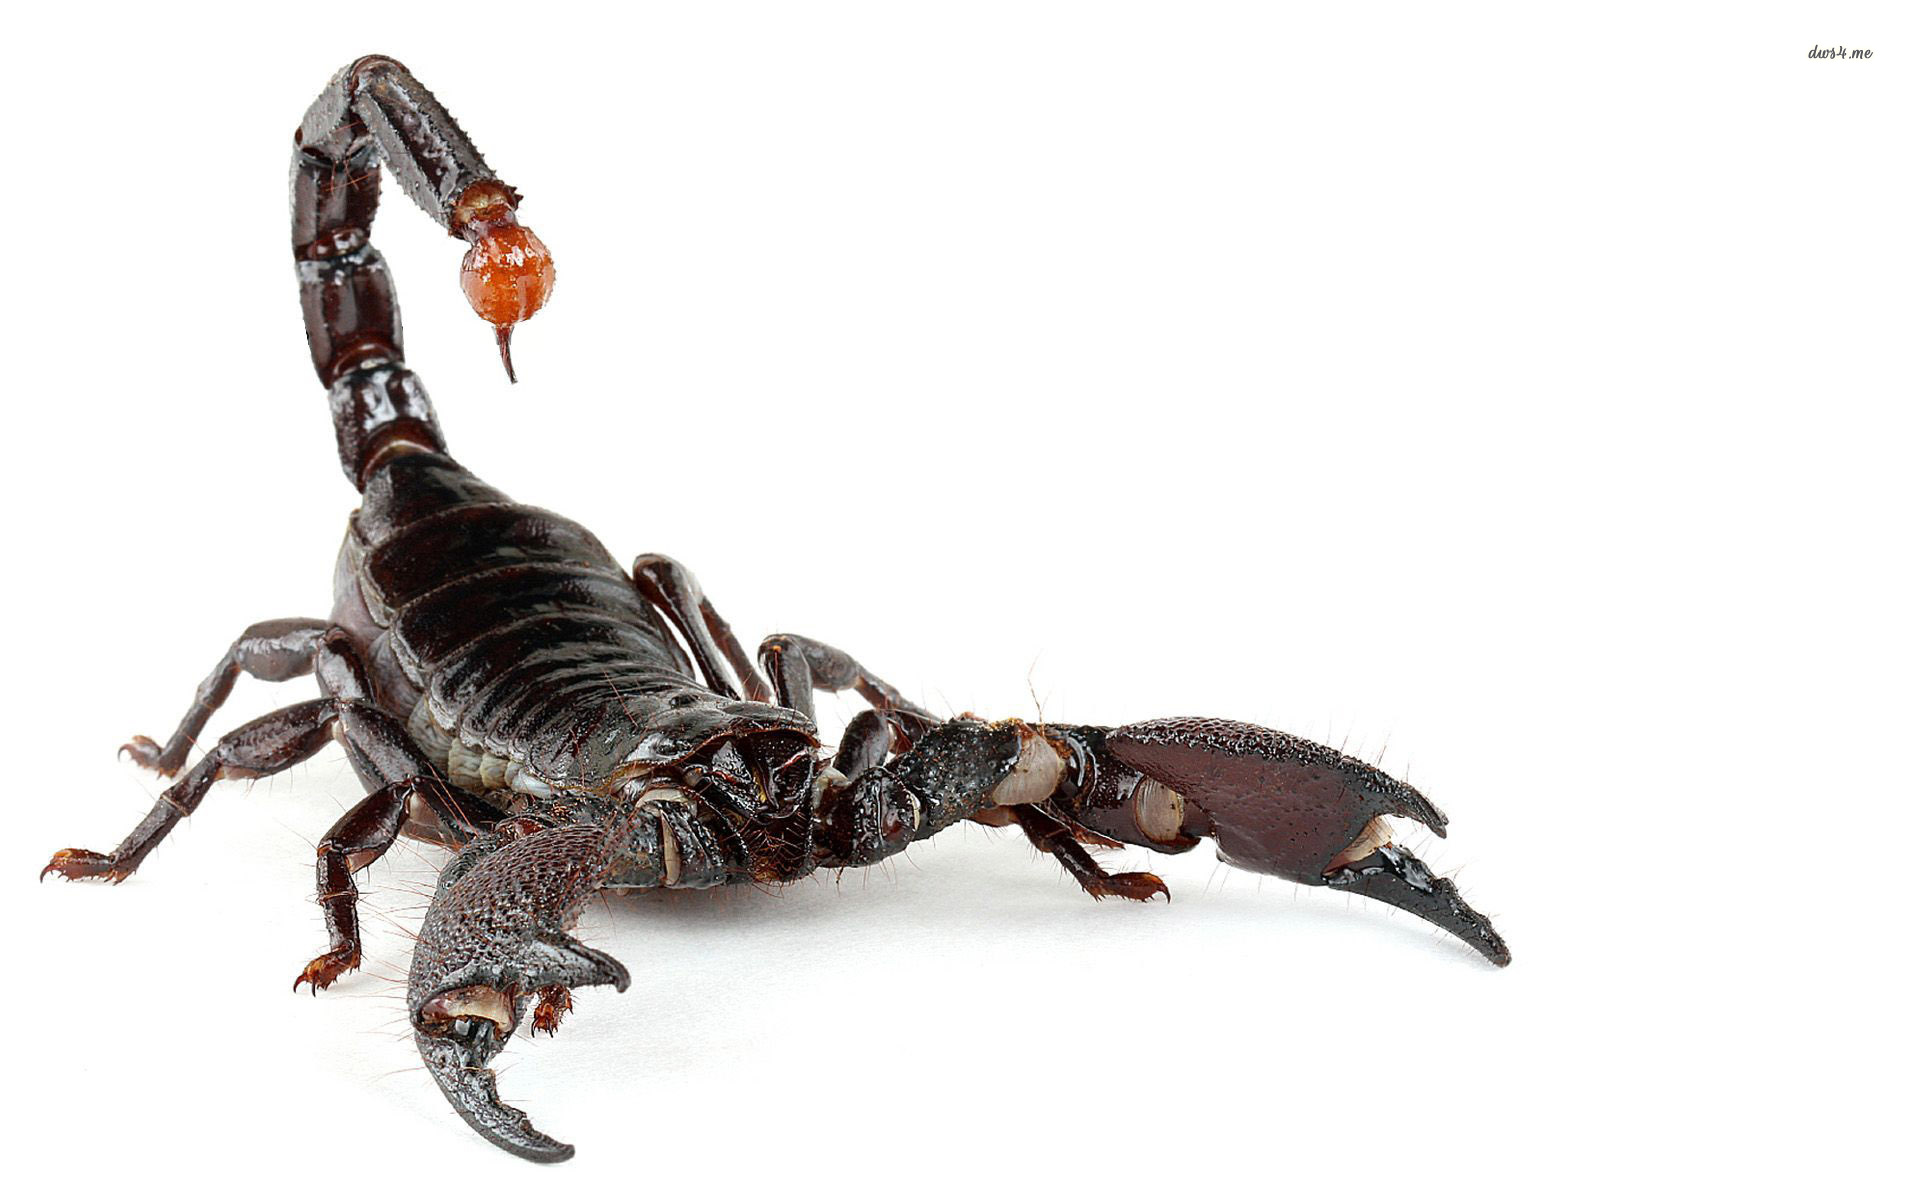 Scorpion #6